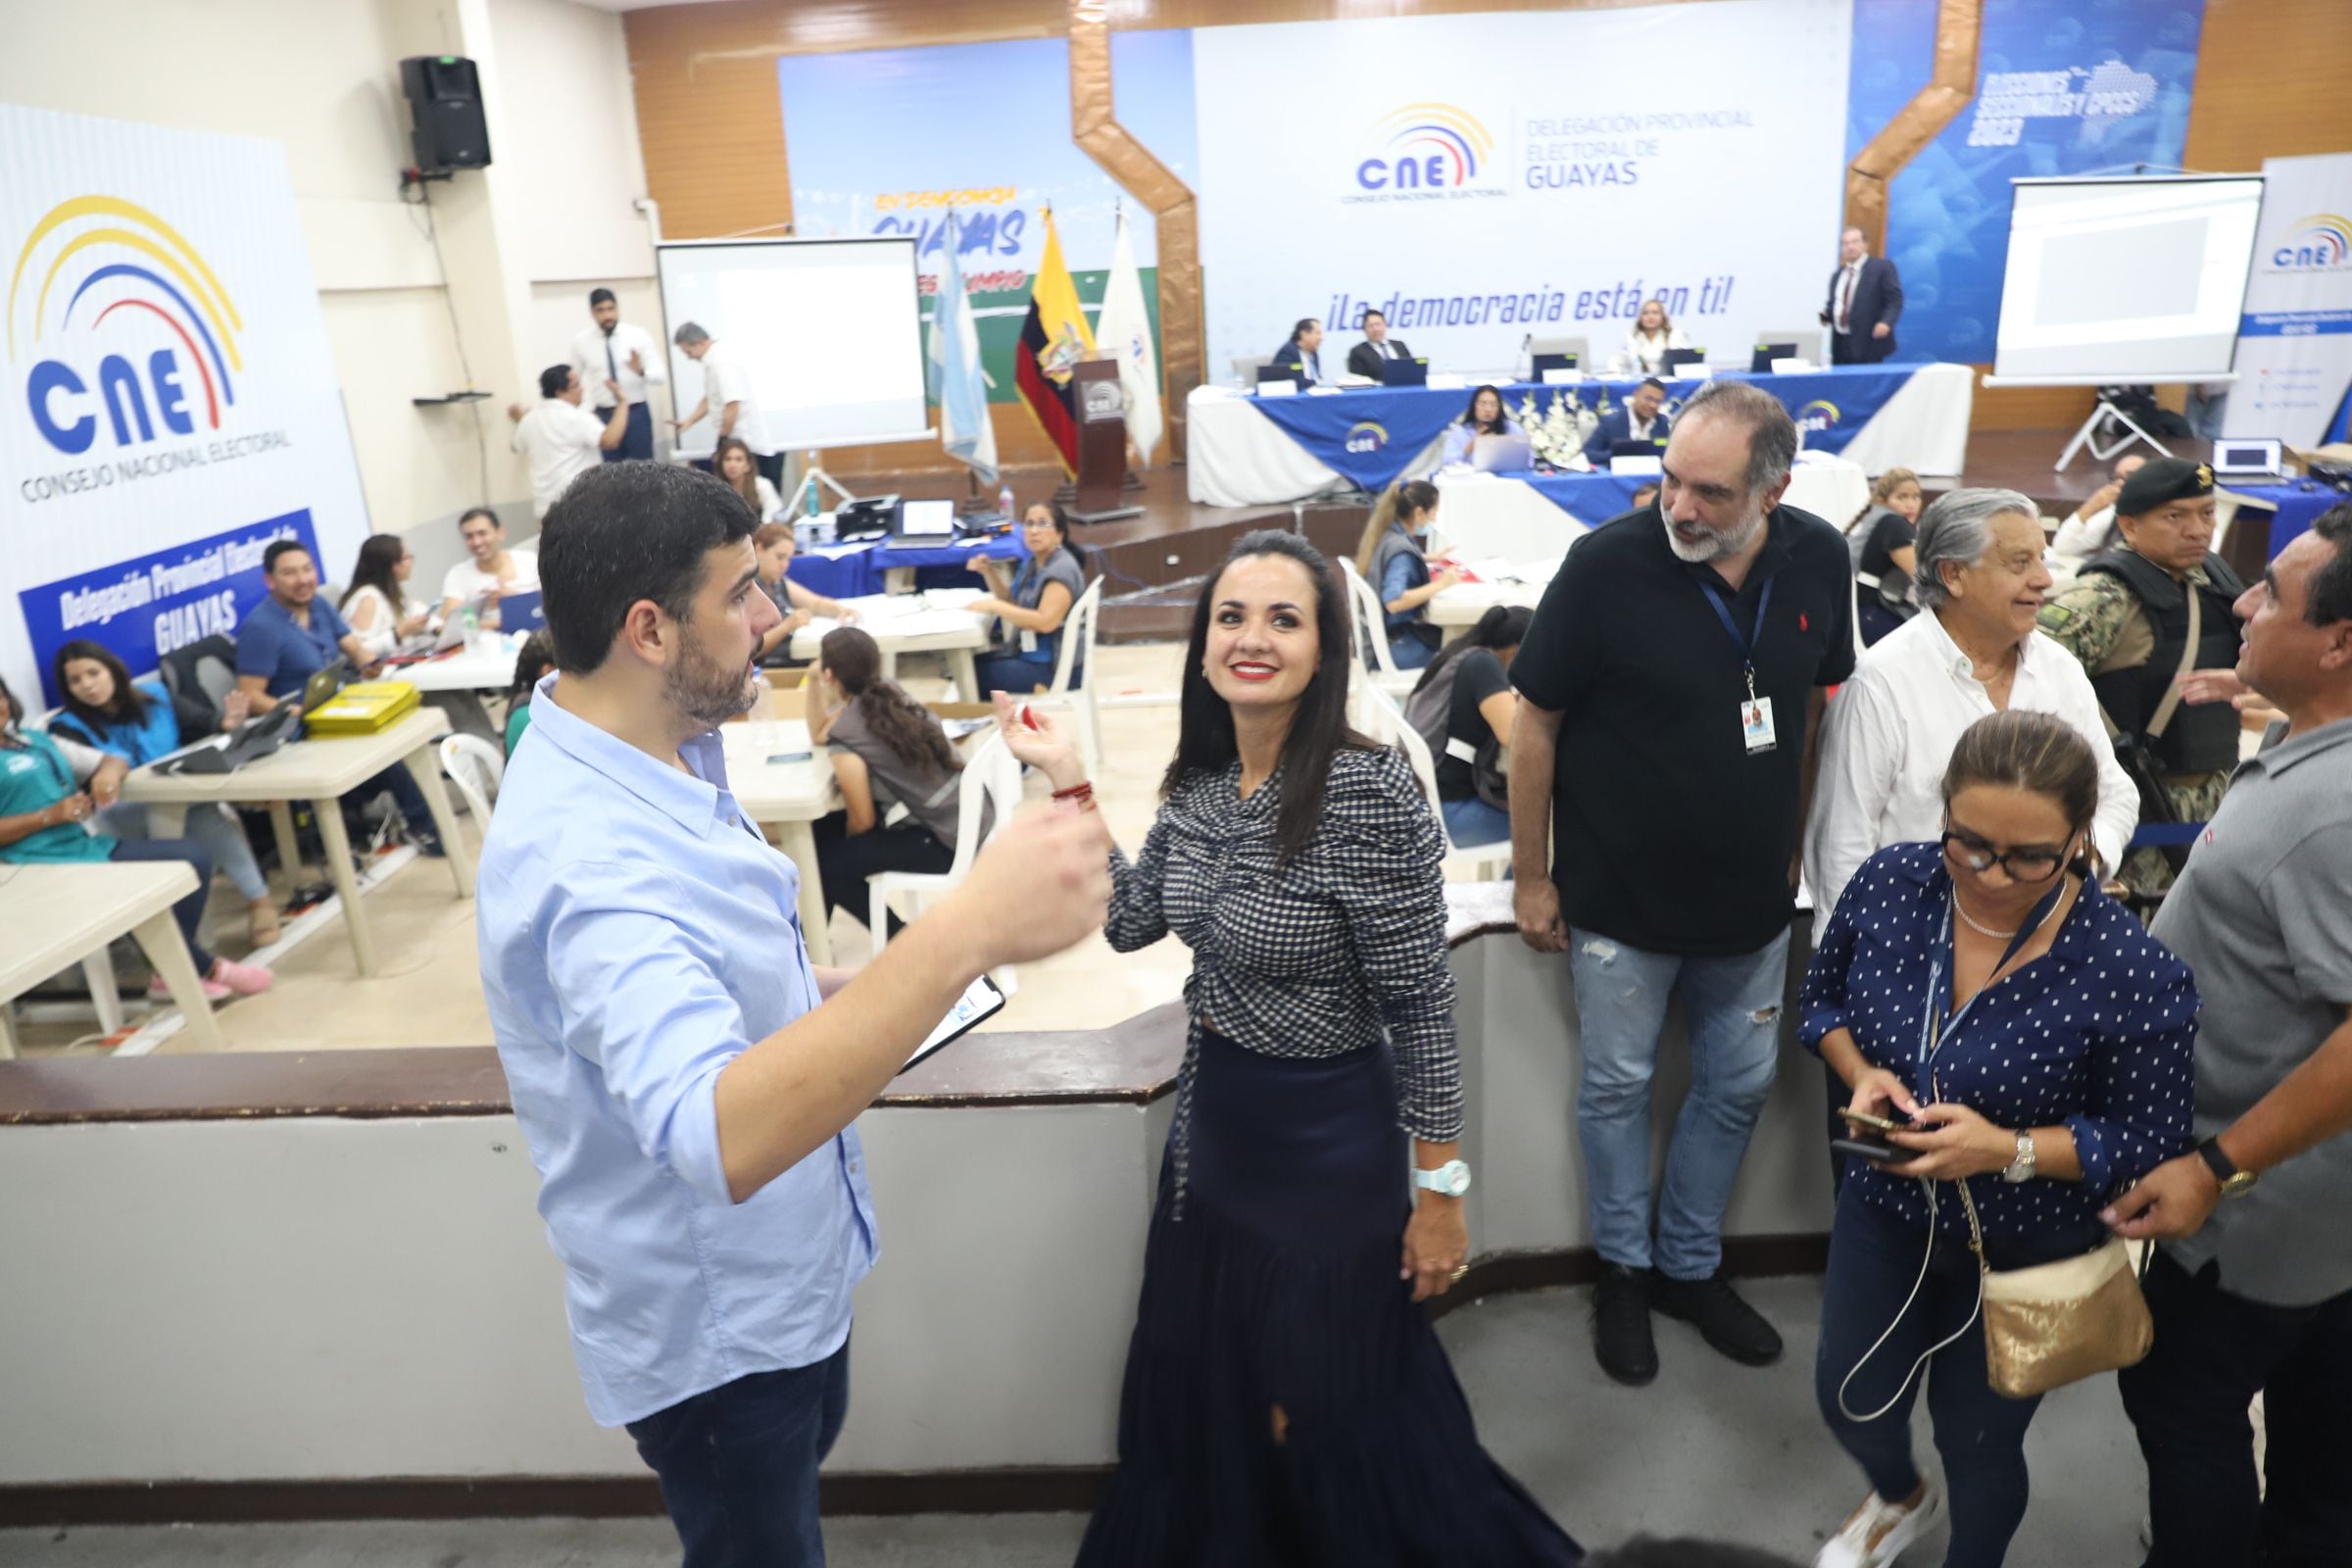 Aquiles Álvarez y Marcela Aguiñaga realizaron una visita corta al CNE Guayas, tras conocerse los resultados preliminares que los da como ganadores en la Alcaldía de Guayaquil y en la Prefectura del Guayas